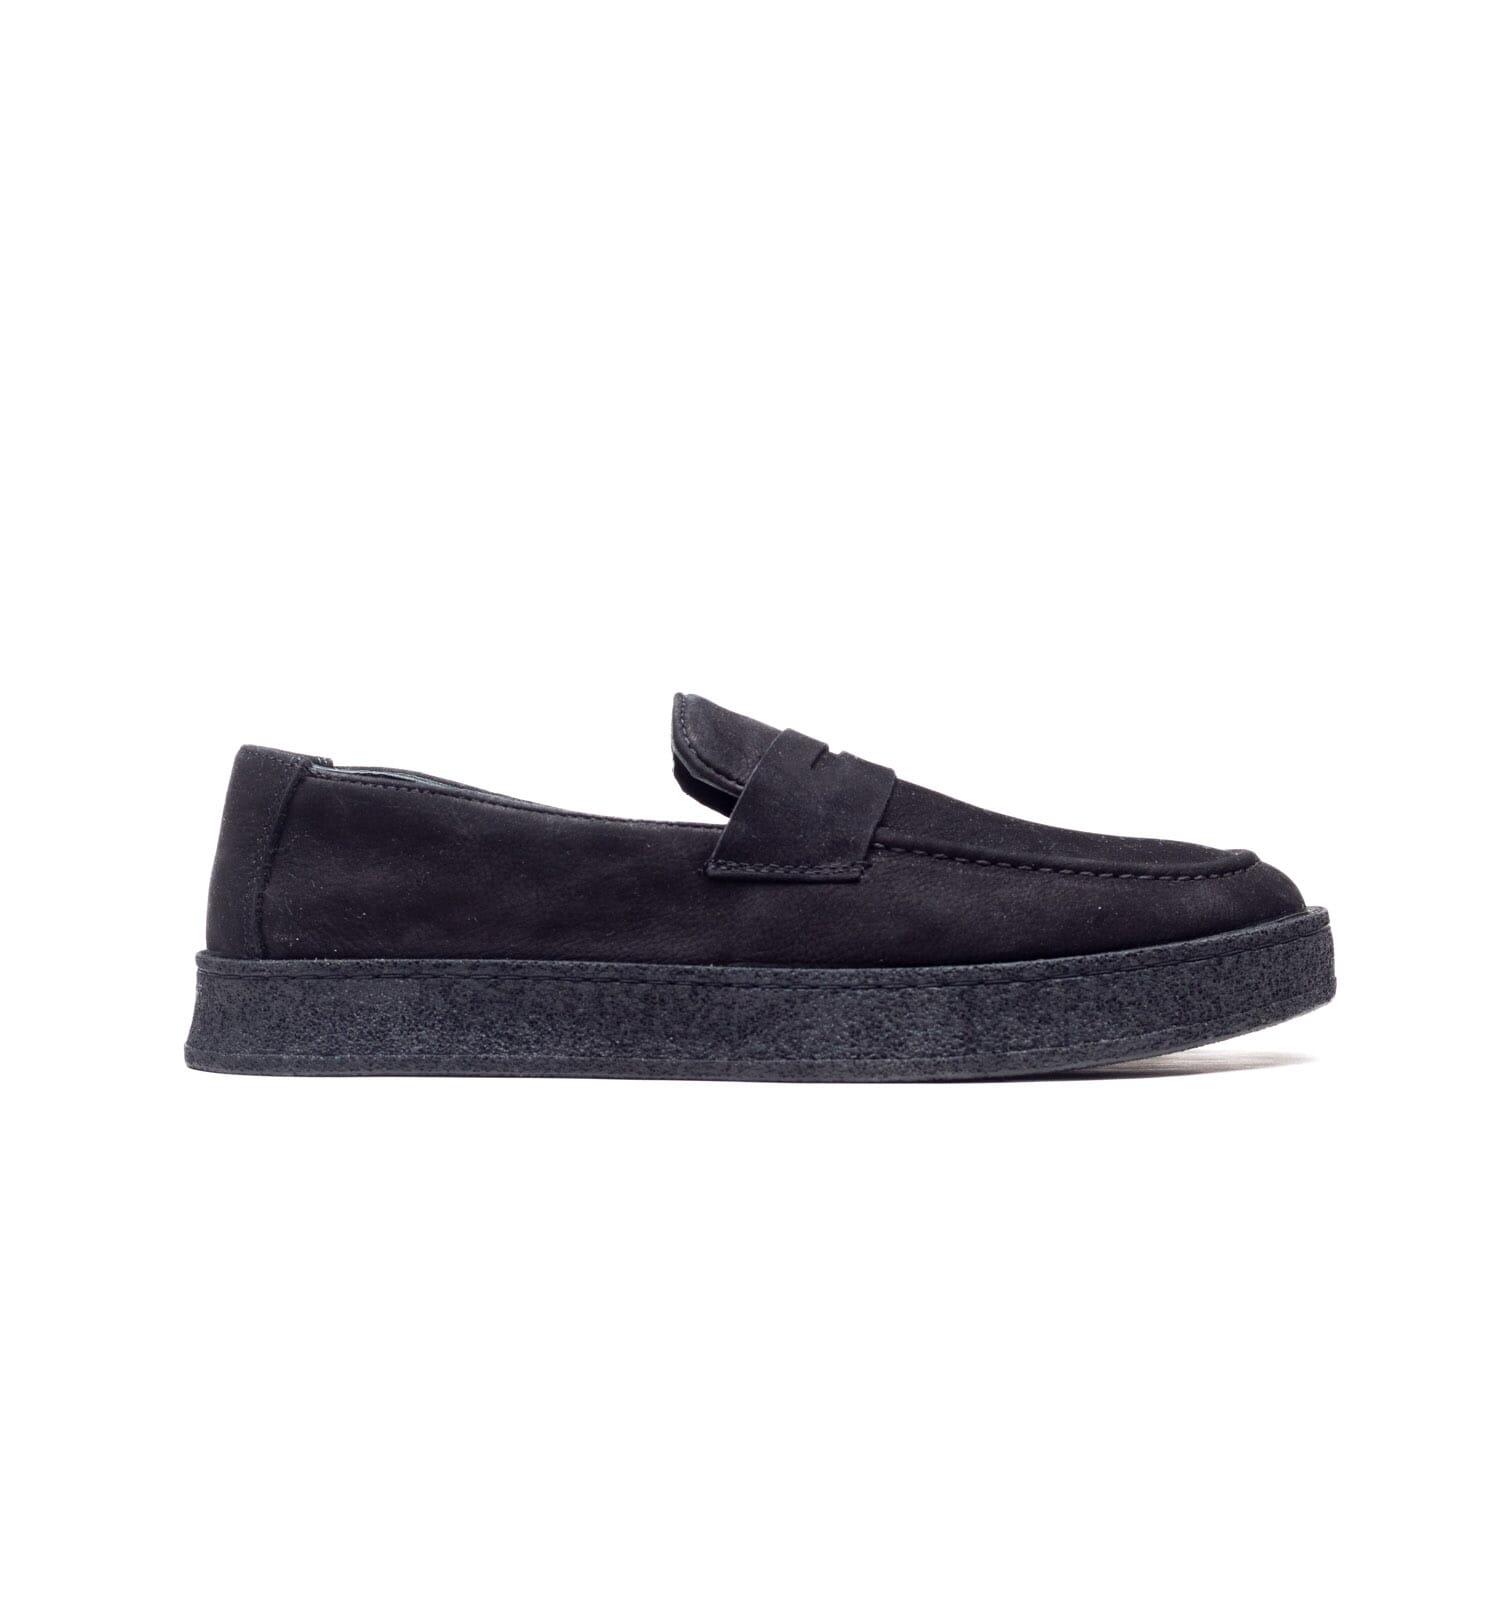 Bulletti – 2214 – Black – Perocili Shoes